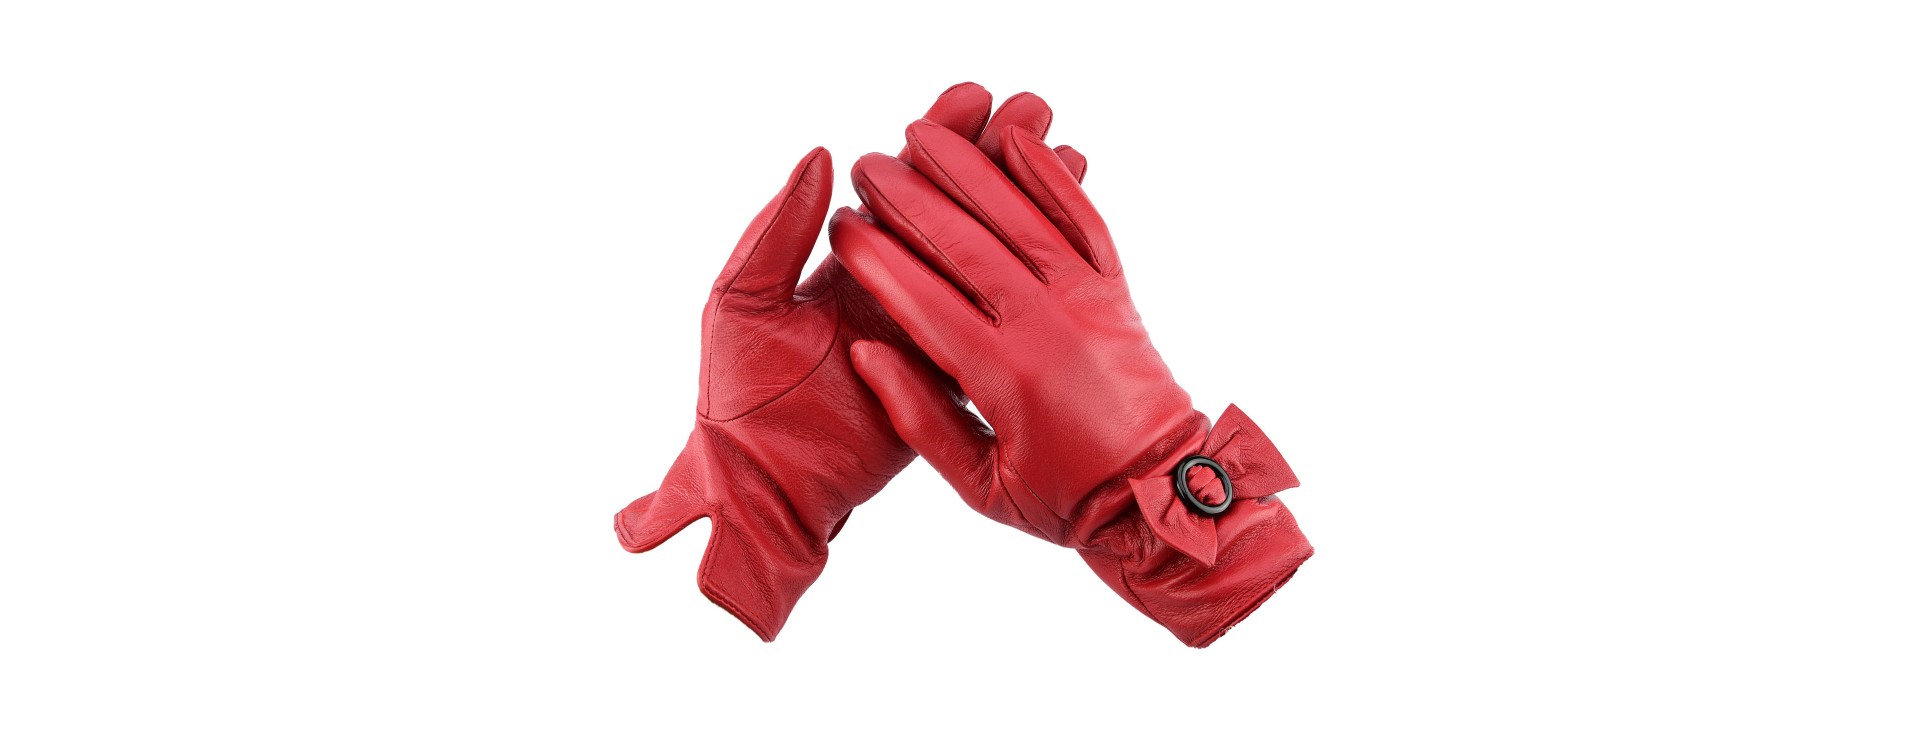 Guanti di pelle caldi: I migliori guanti invernali